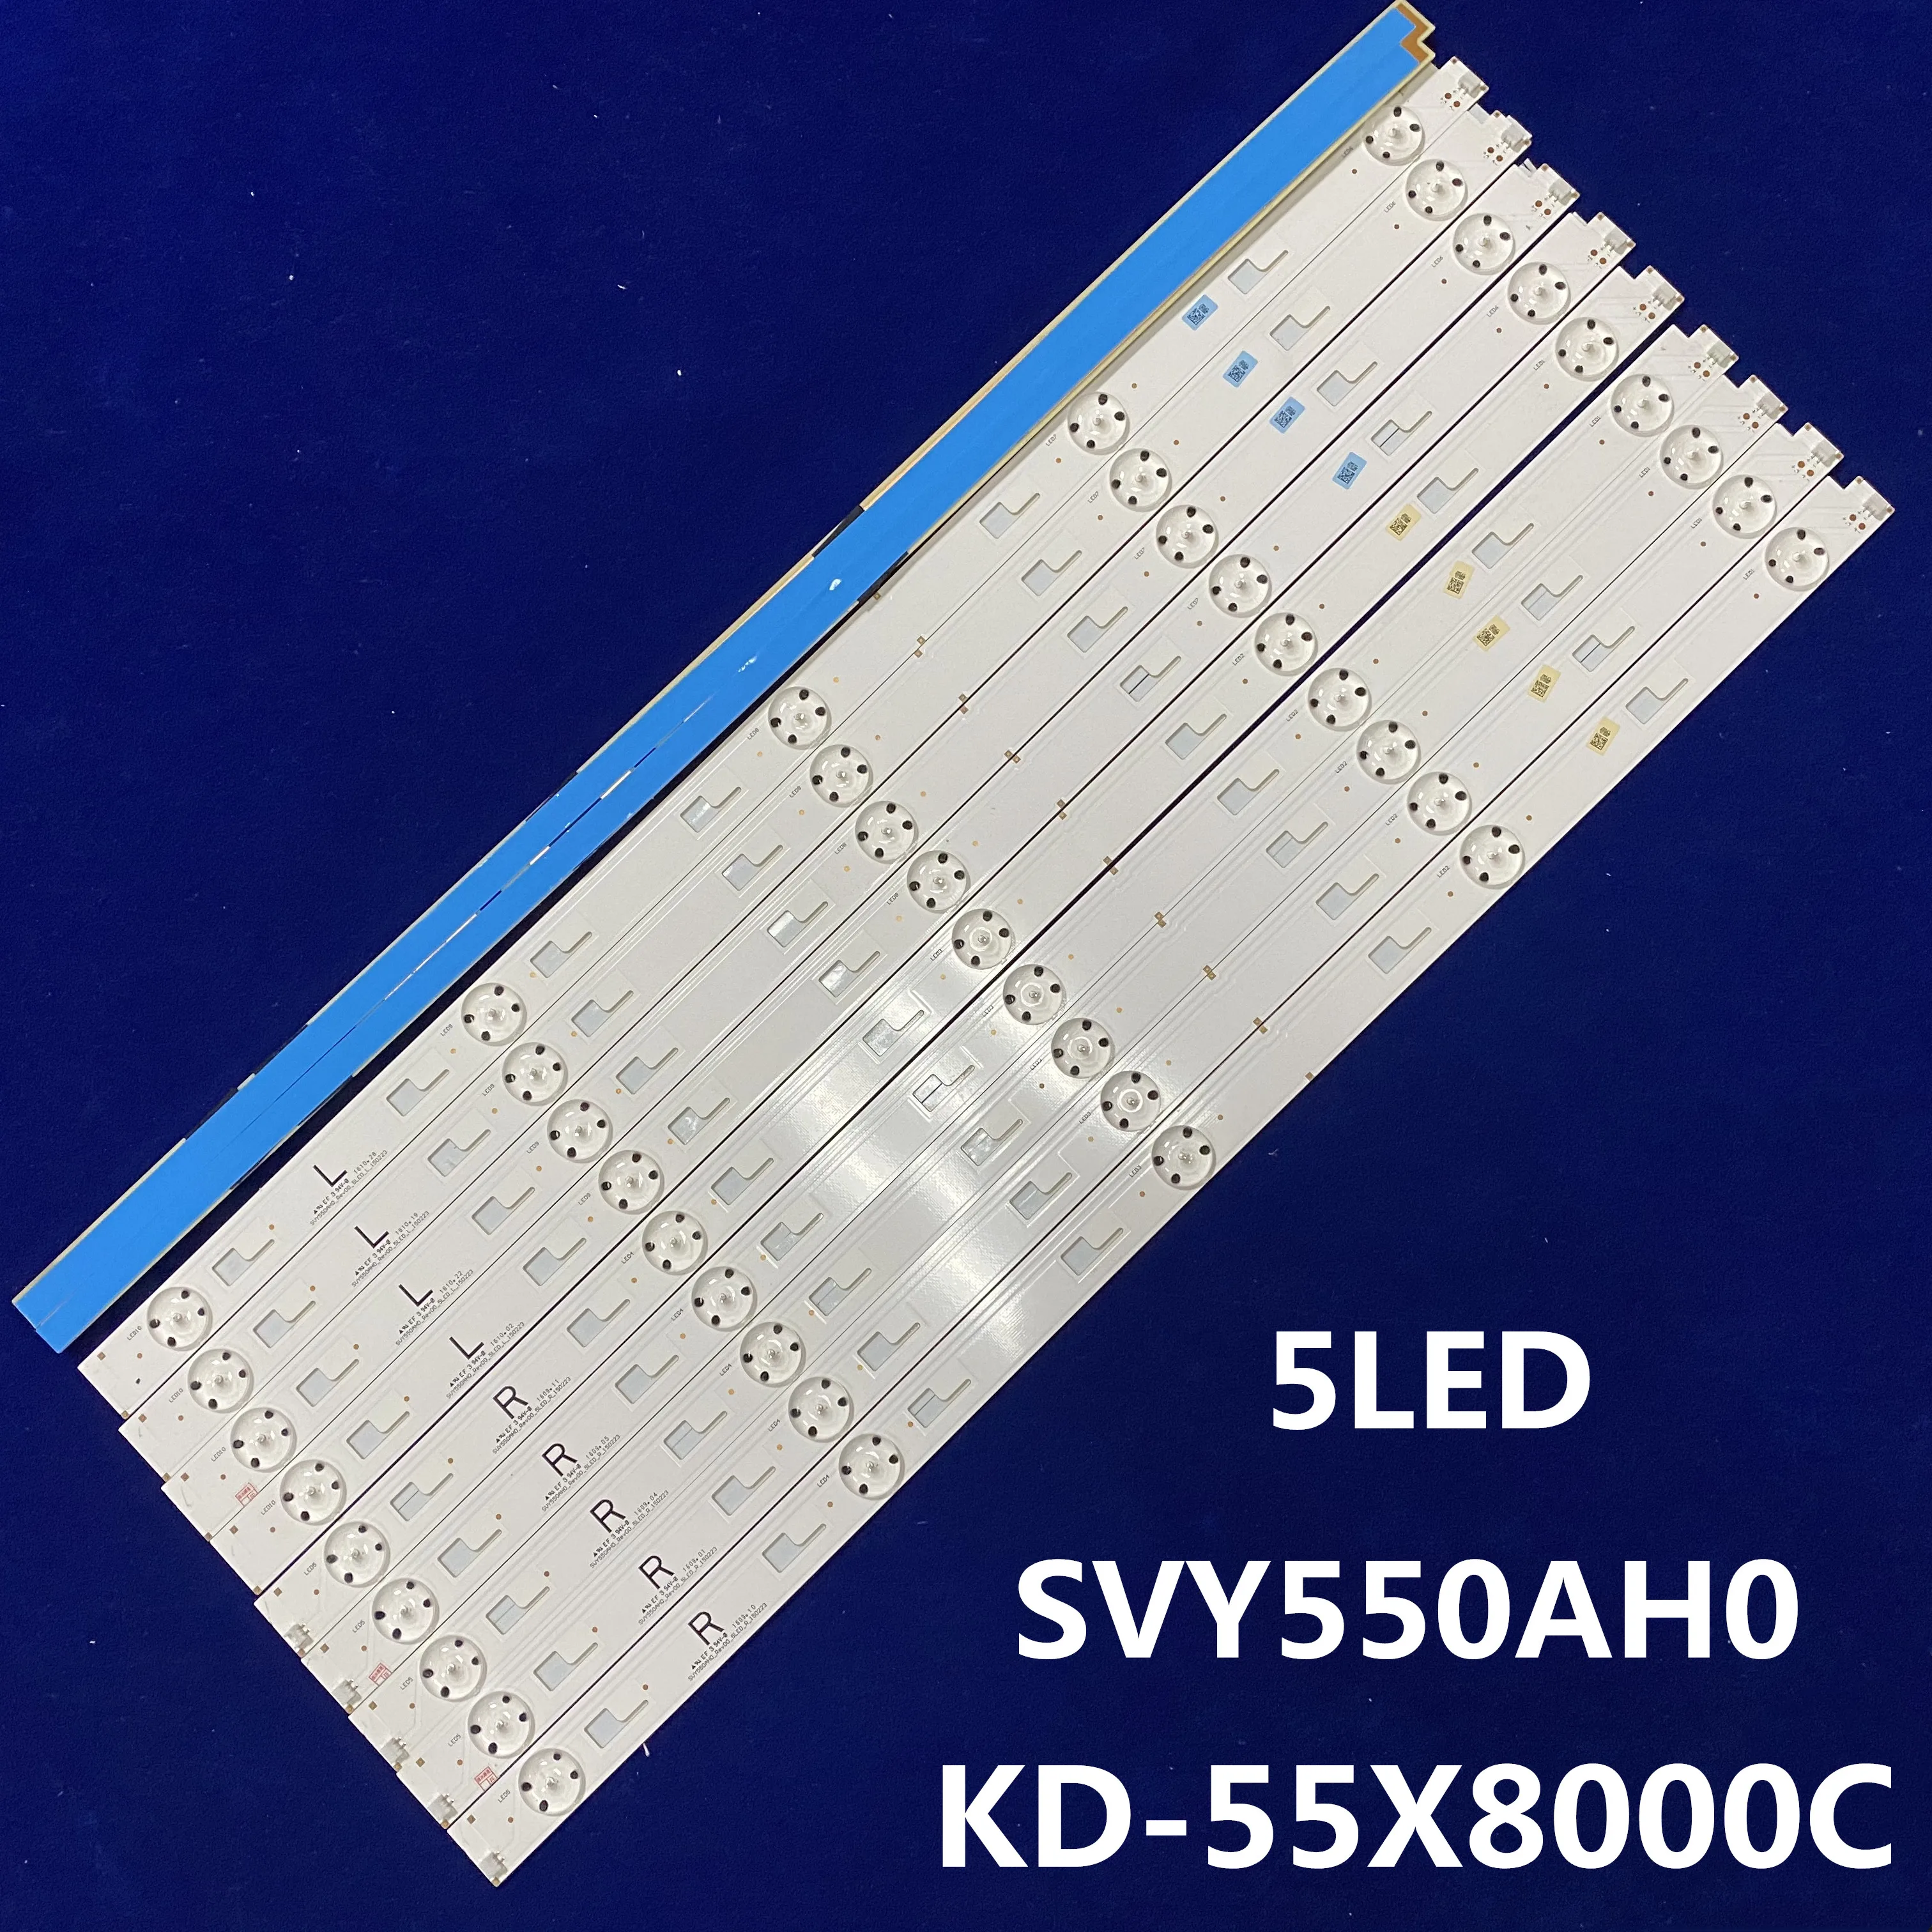 1 Komplekt=10 Tükki KD-55X8000C Led backlight SVY550AH0-Rev00-5LED-L-150223 5LEDS